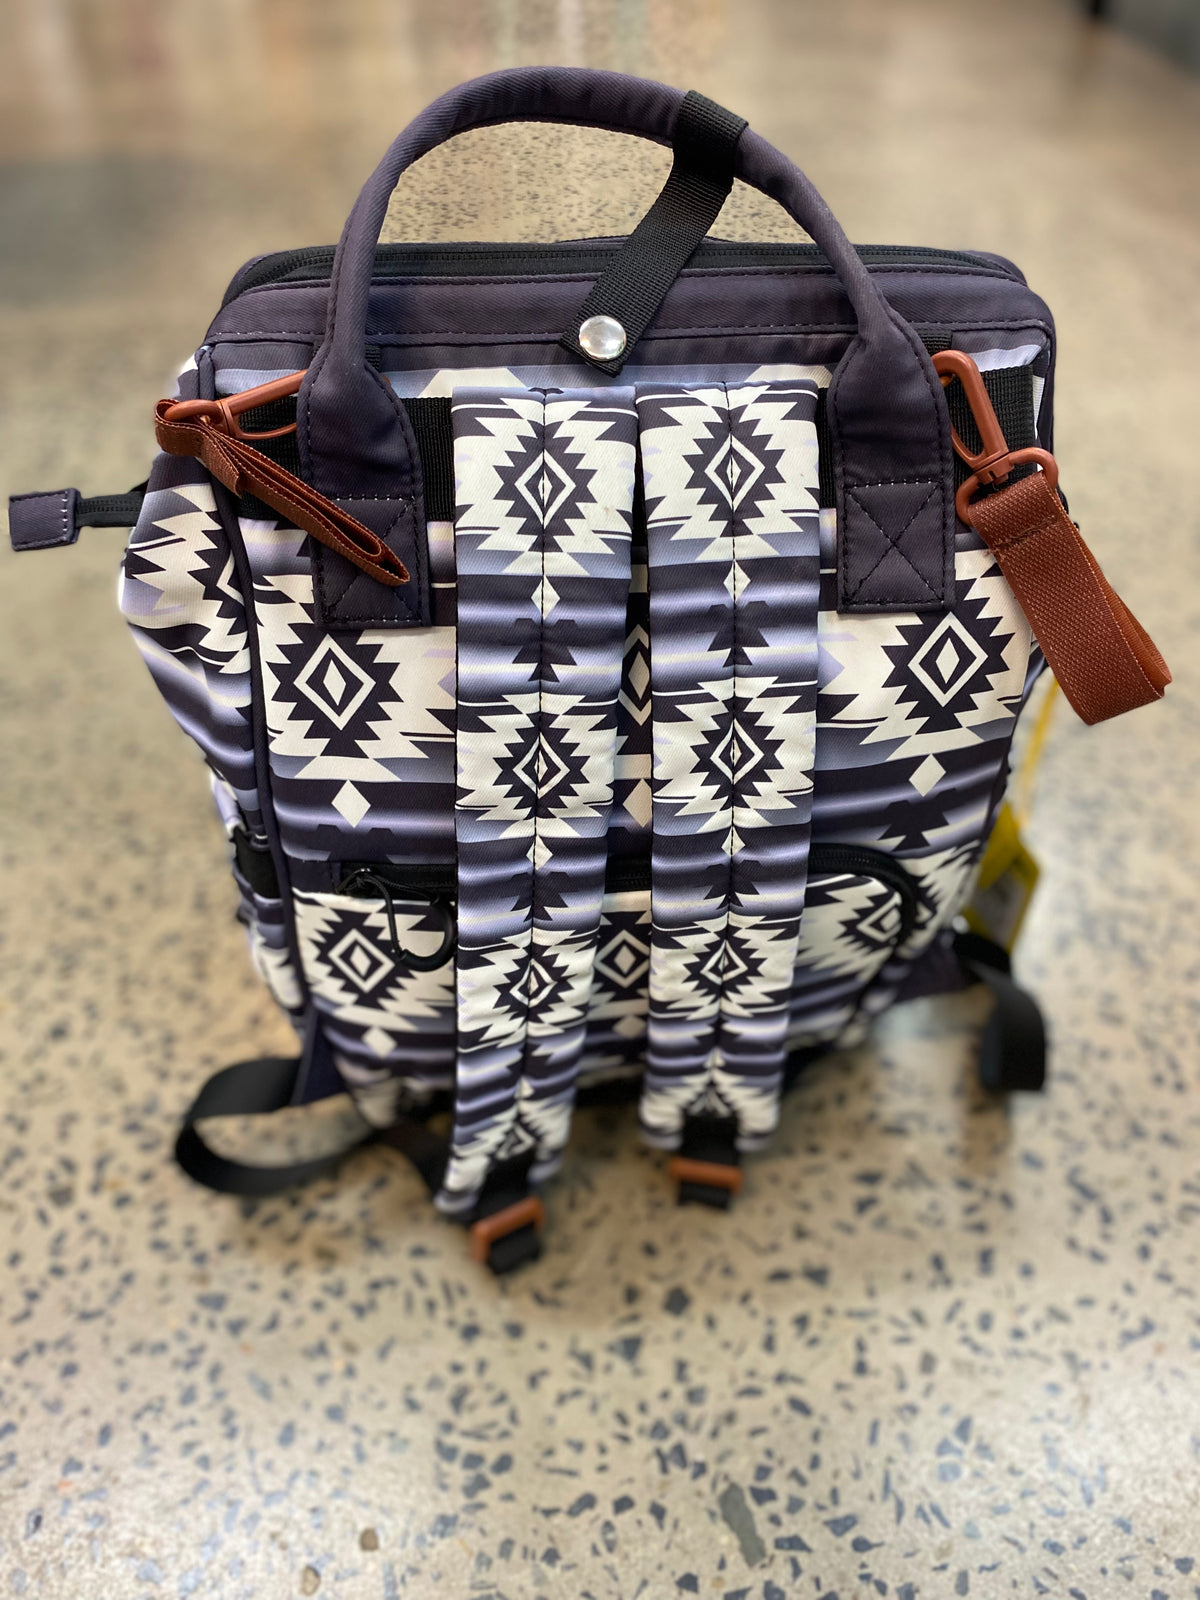 Wrangler Allover Aztec Dual Sided Backpack (WG2204-9110BK)